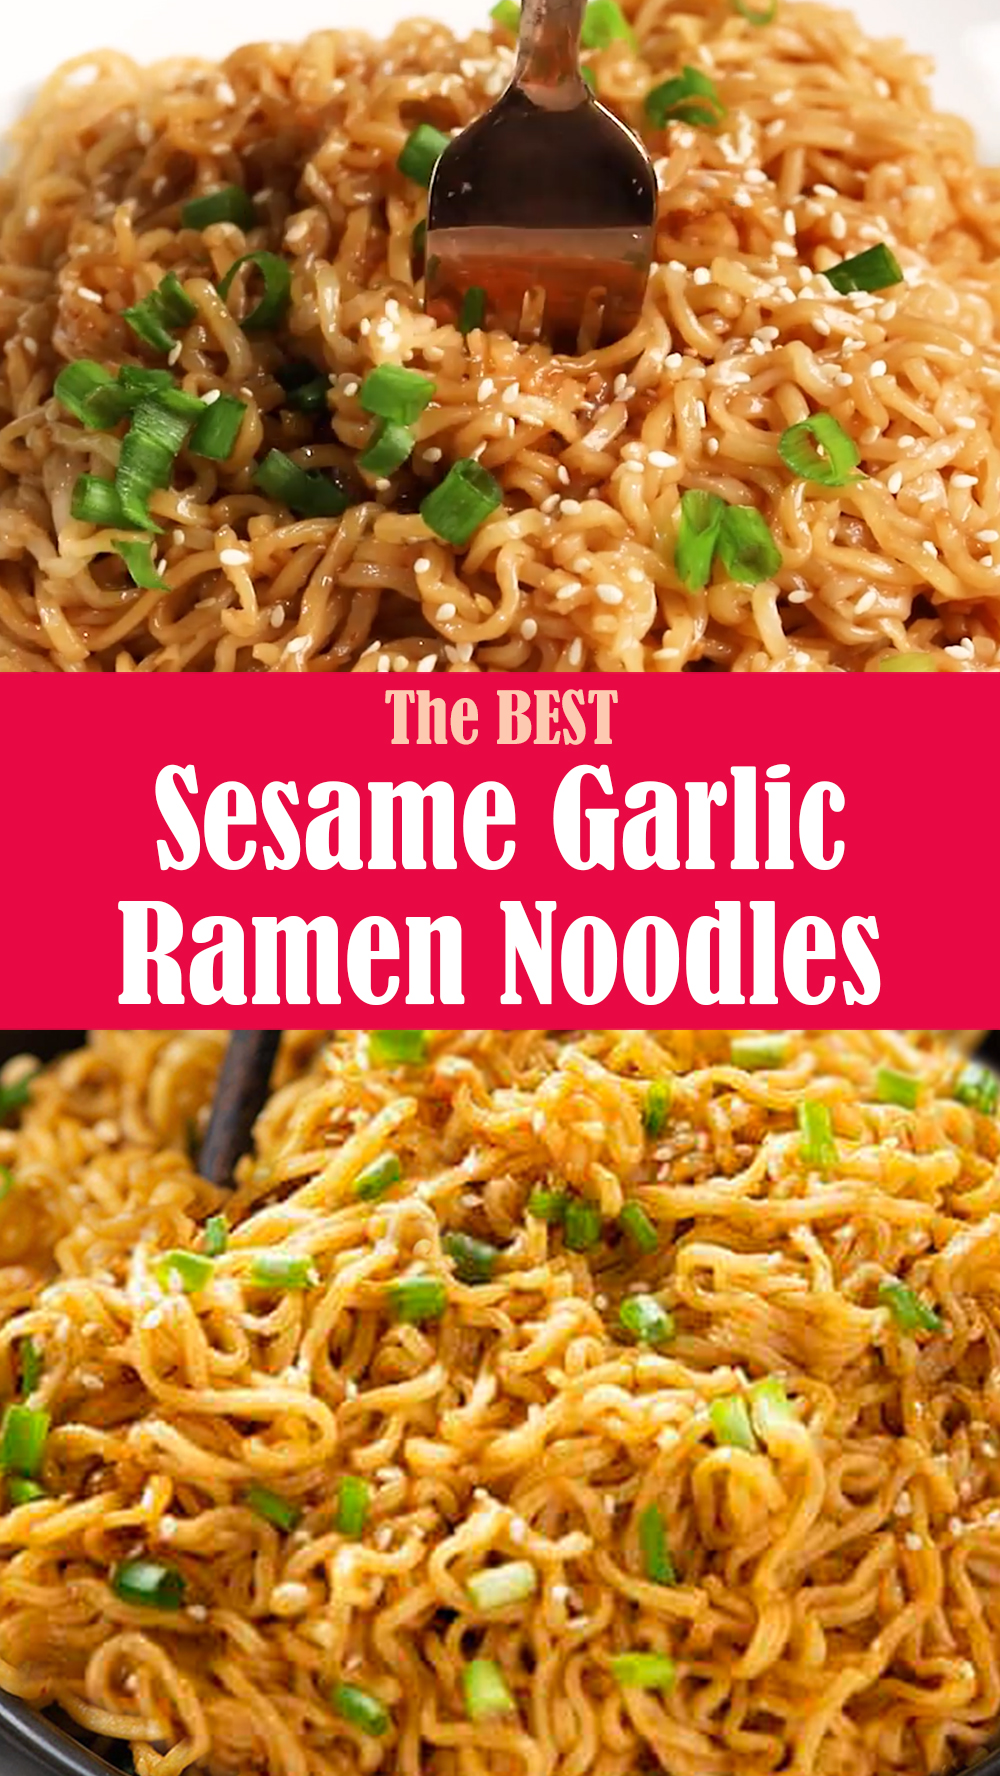 The BEST Sesame Garlic Ramen Noodles